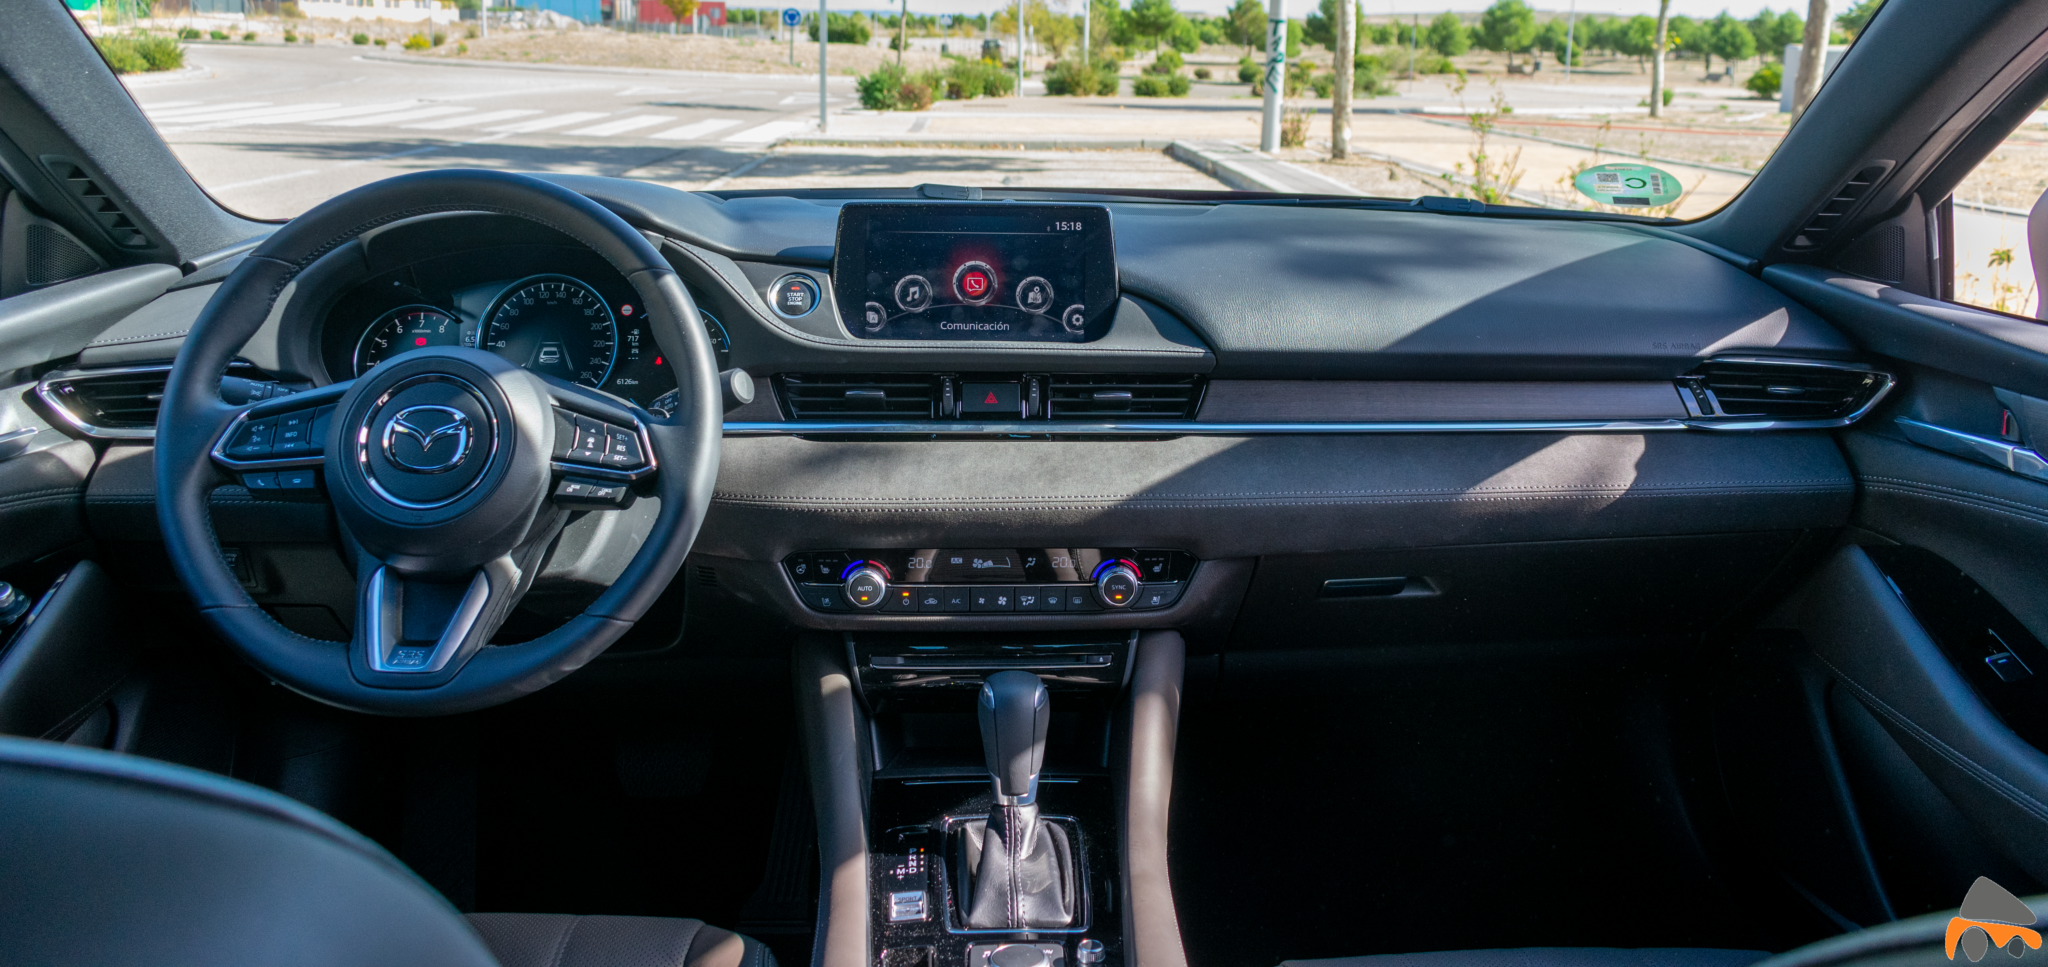 Salpicadero vista frontal Mazda6 - Mazda6 Signature gasolina: Una berlina con potencia y consumos ajustados